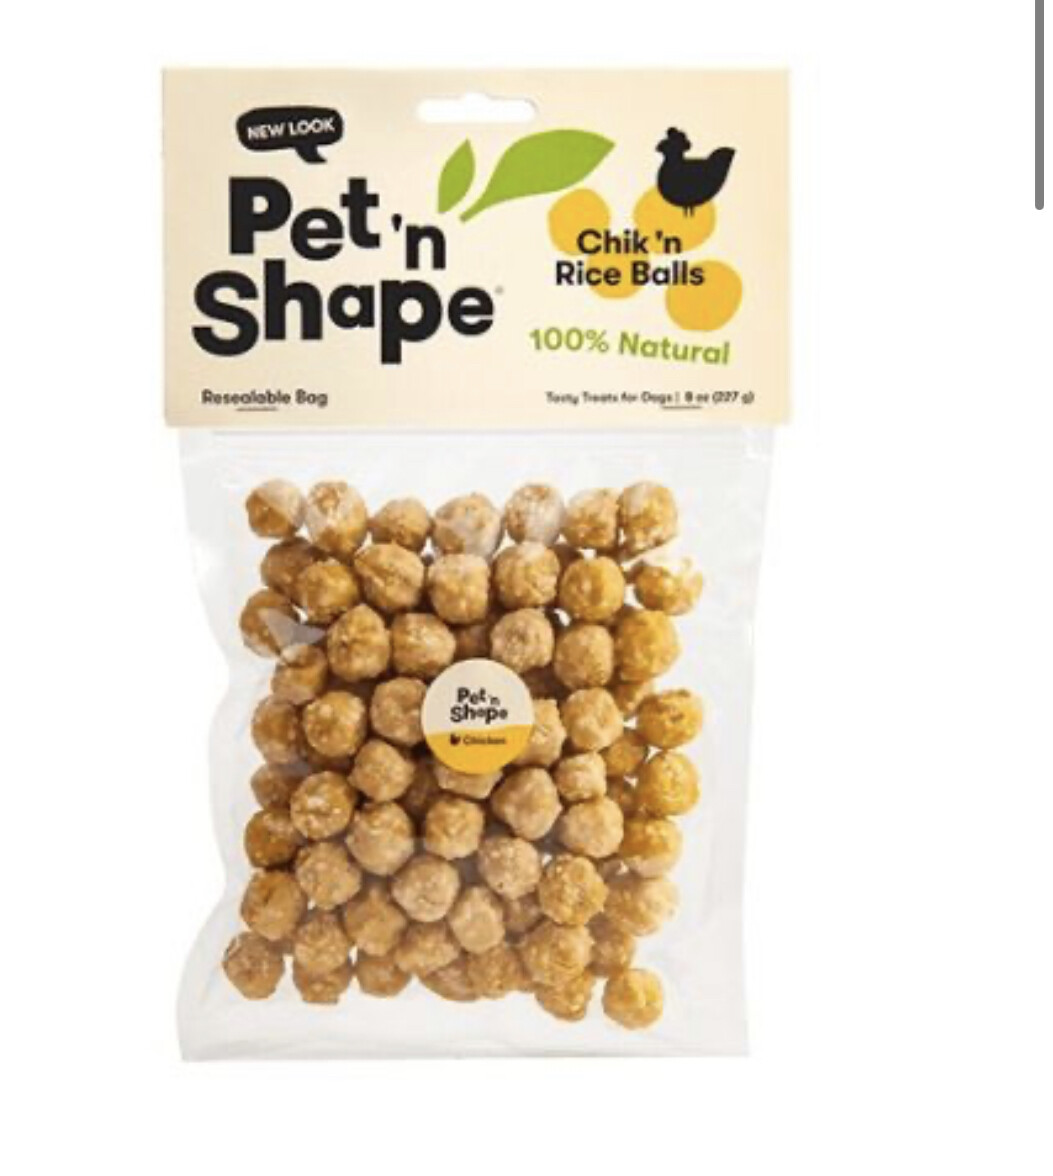 Pet'n Shape Chik'n Rice Balls 8 oz